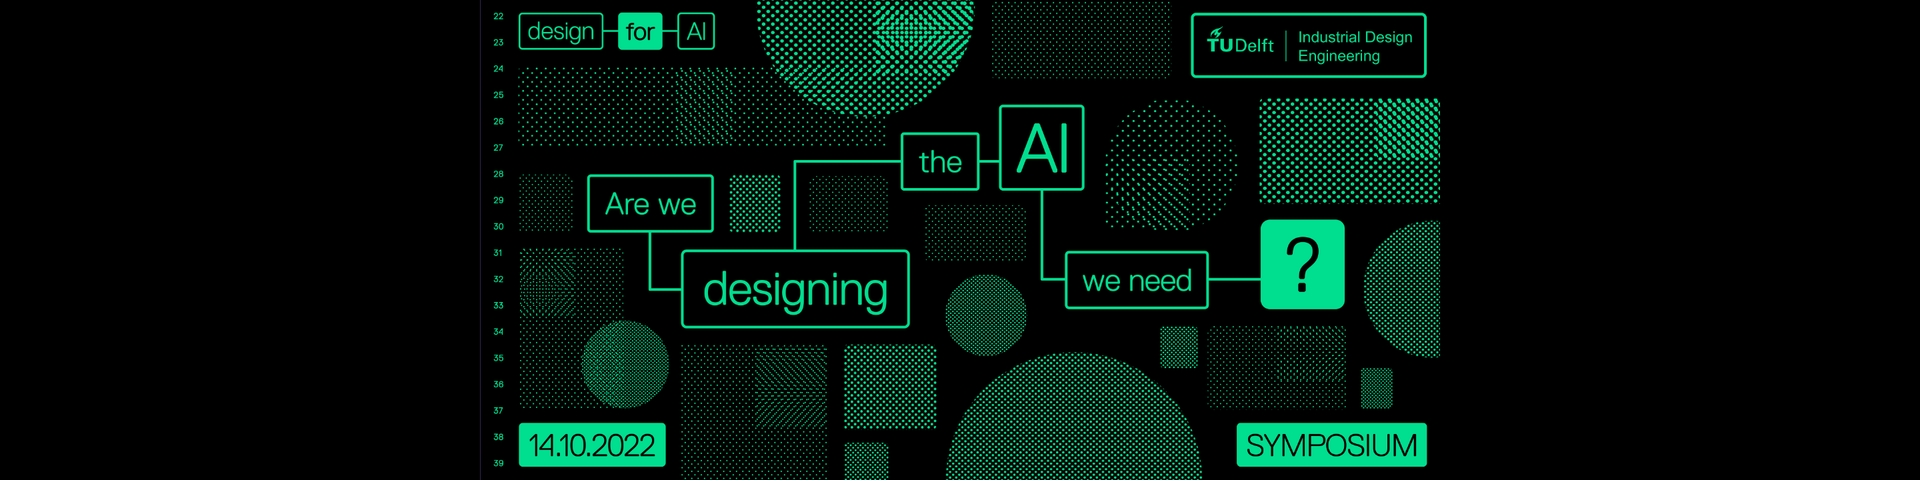 Design for AI Symposium 14 Otober 2022